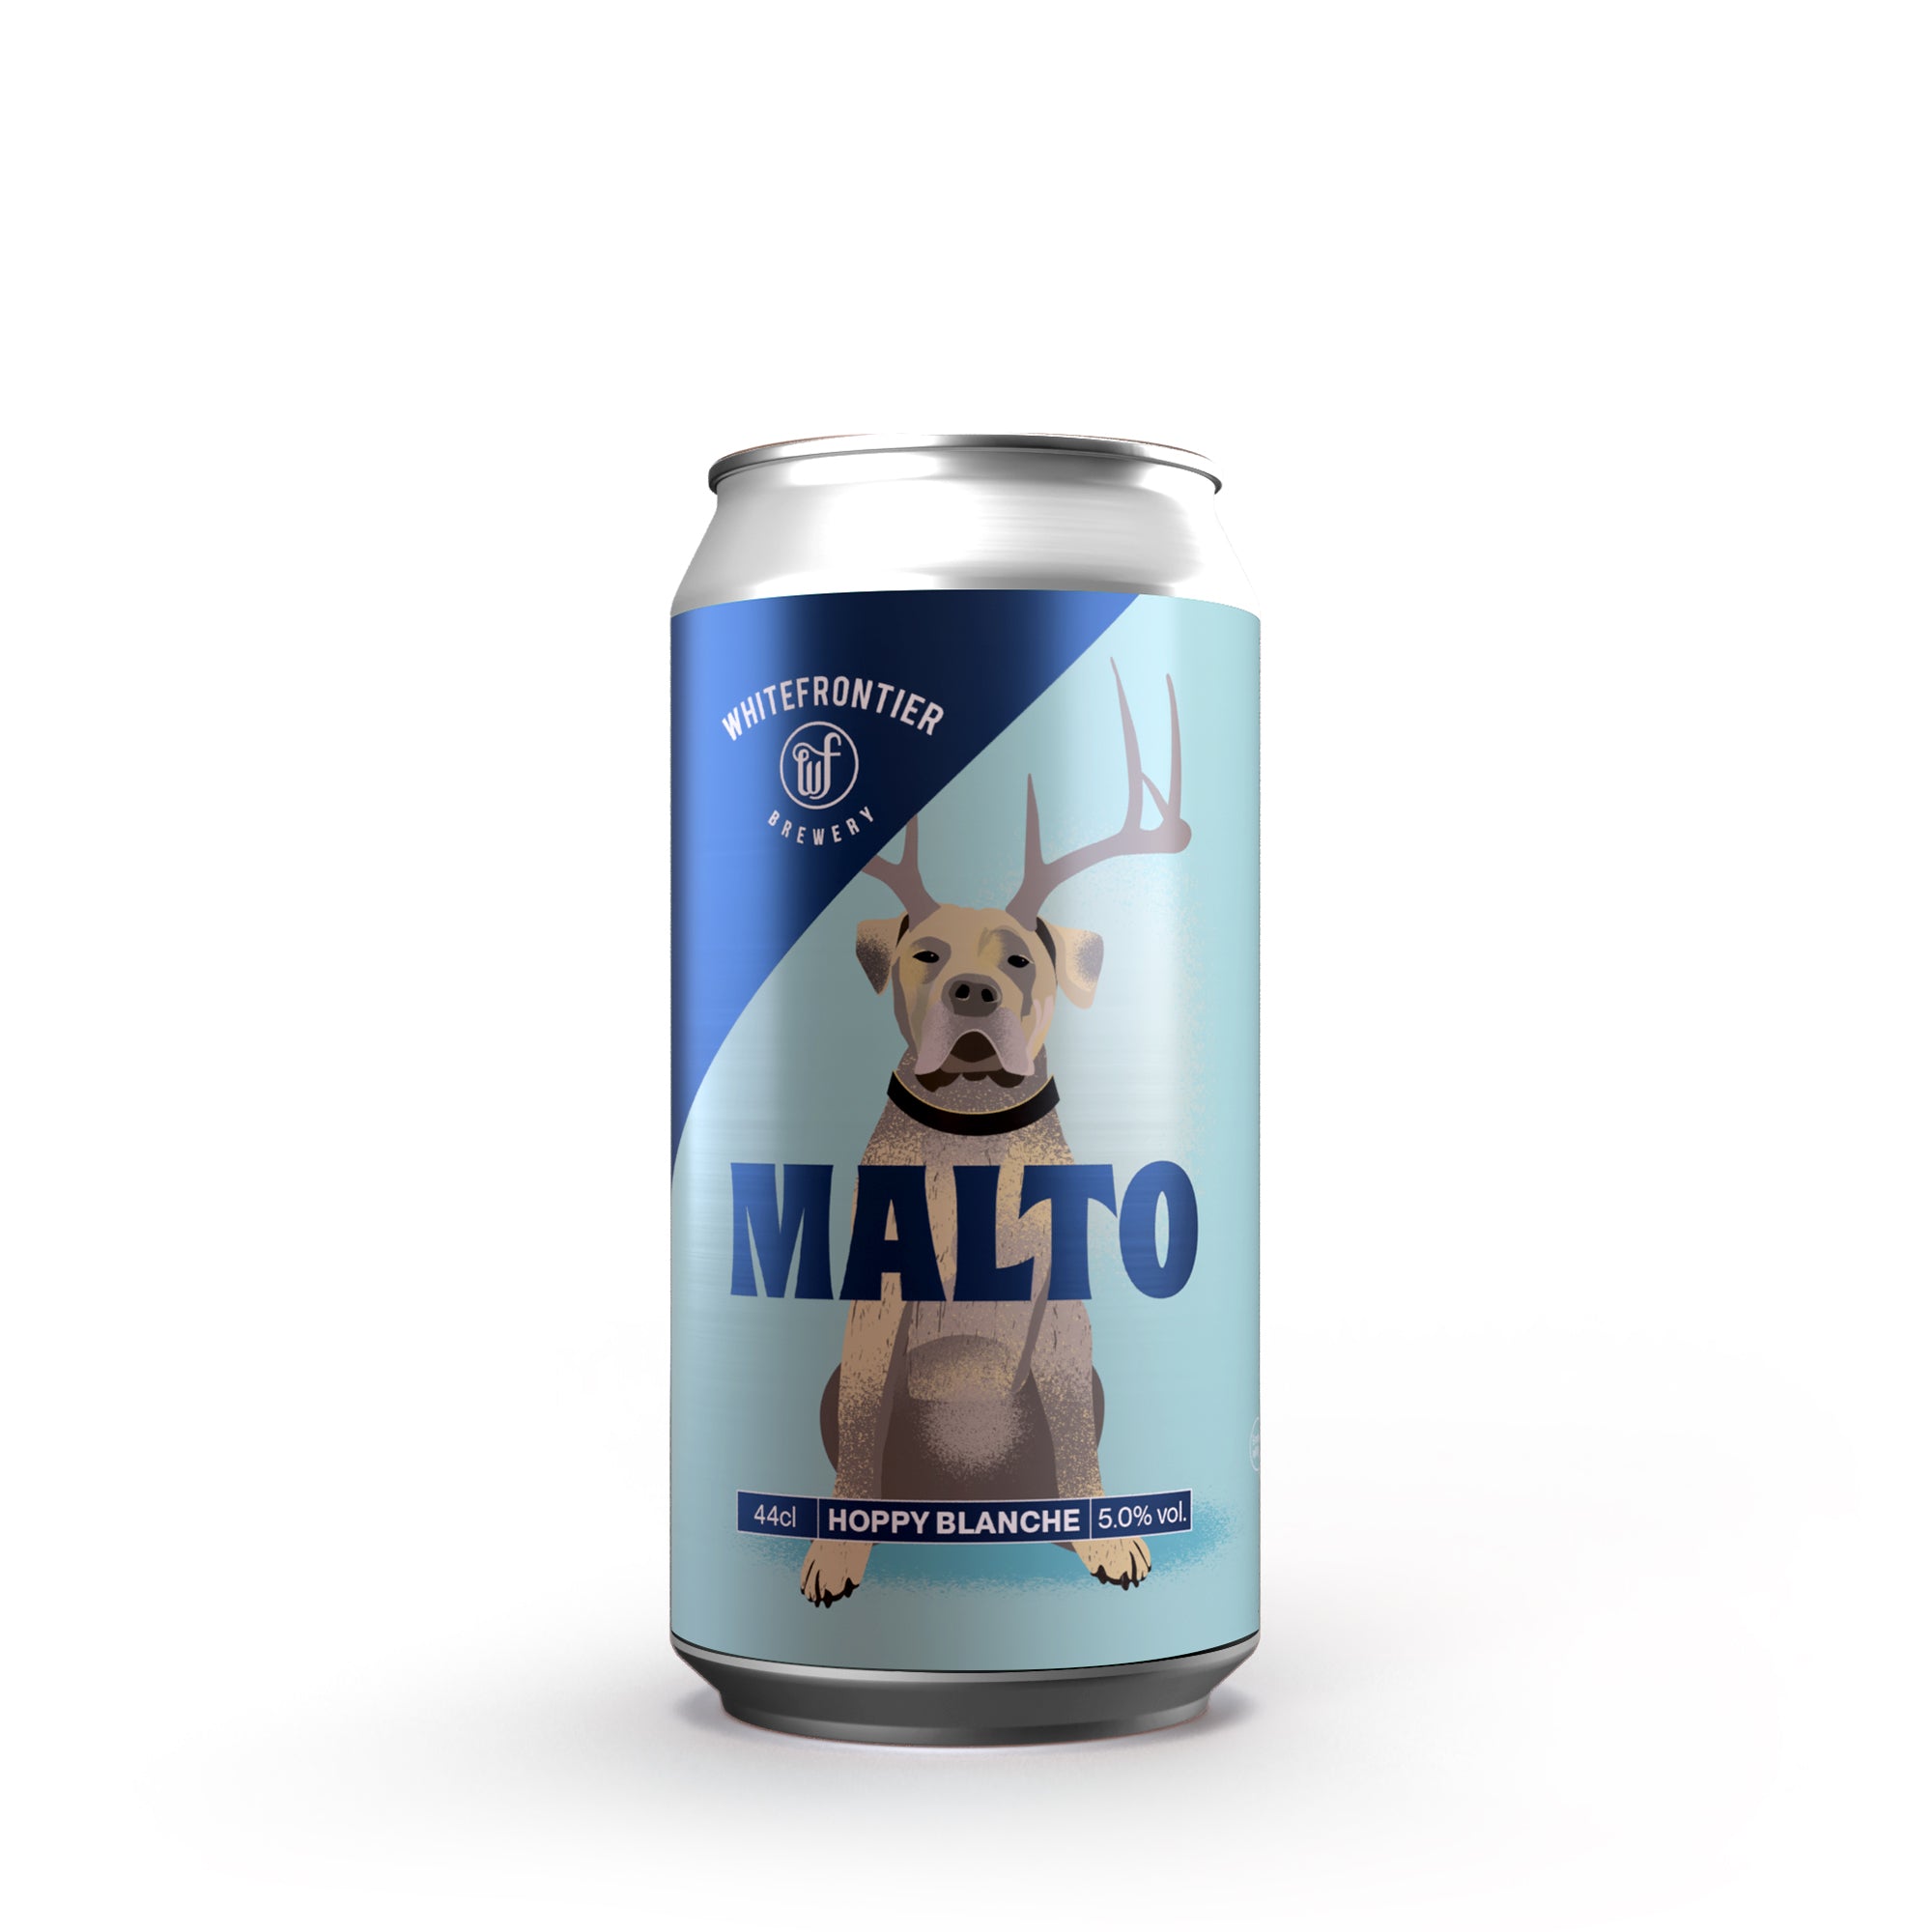 Canette de malto bleu avec un chien qui a des cornes de cerf